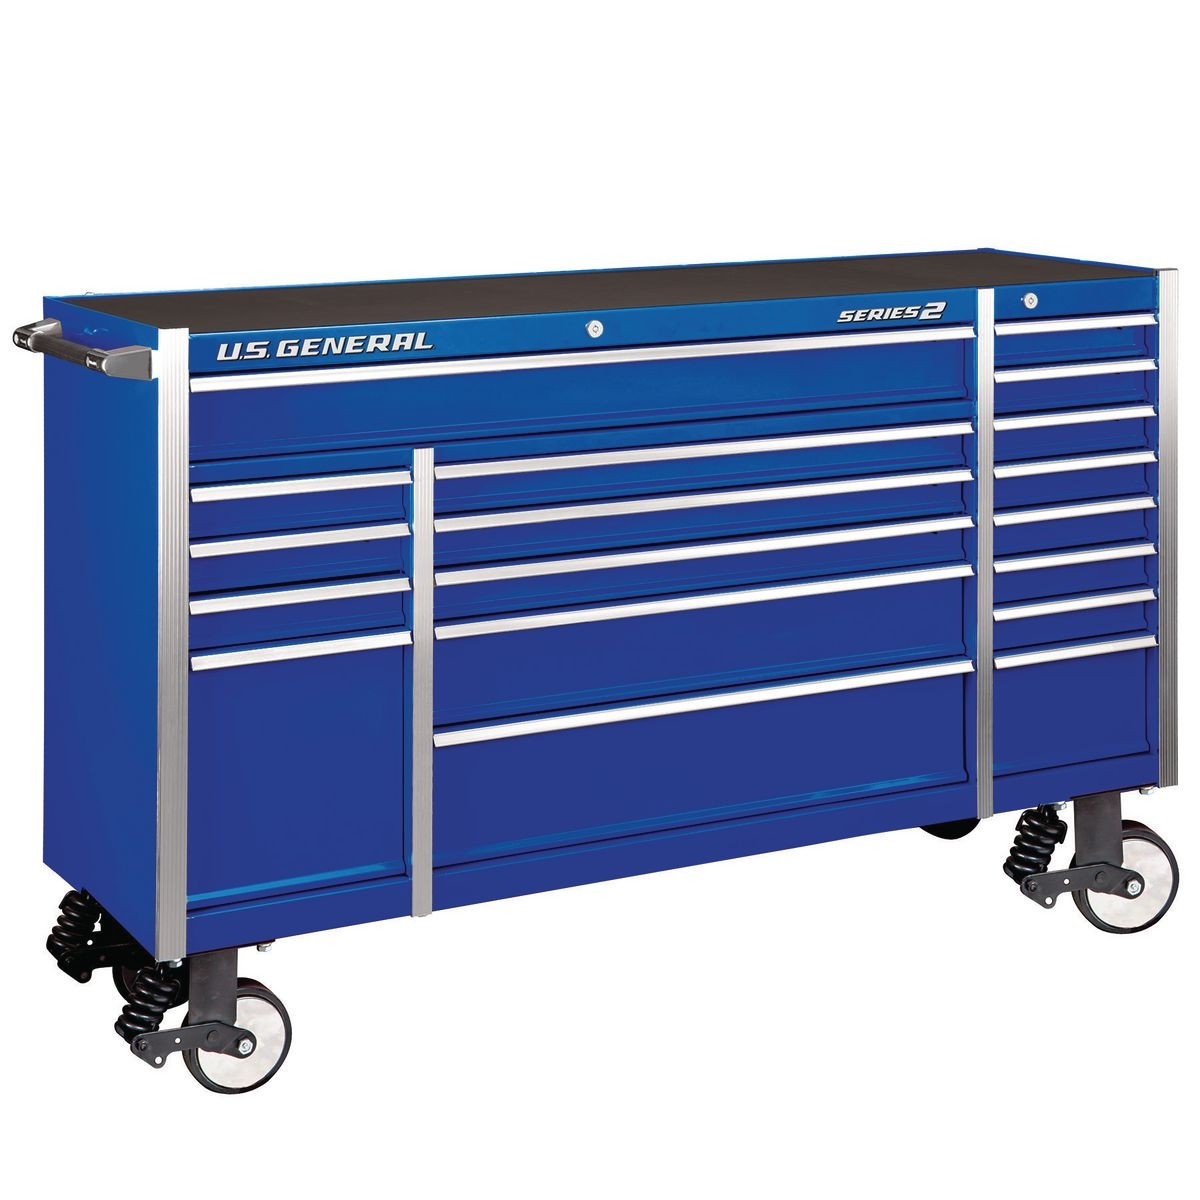 U.S. GENERAL 72 In. X 22 In. Triple Bank Roller Cabinet – Blue – Item 64004